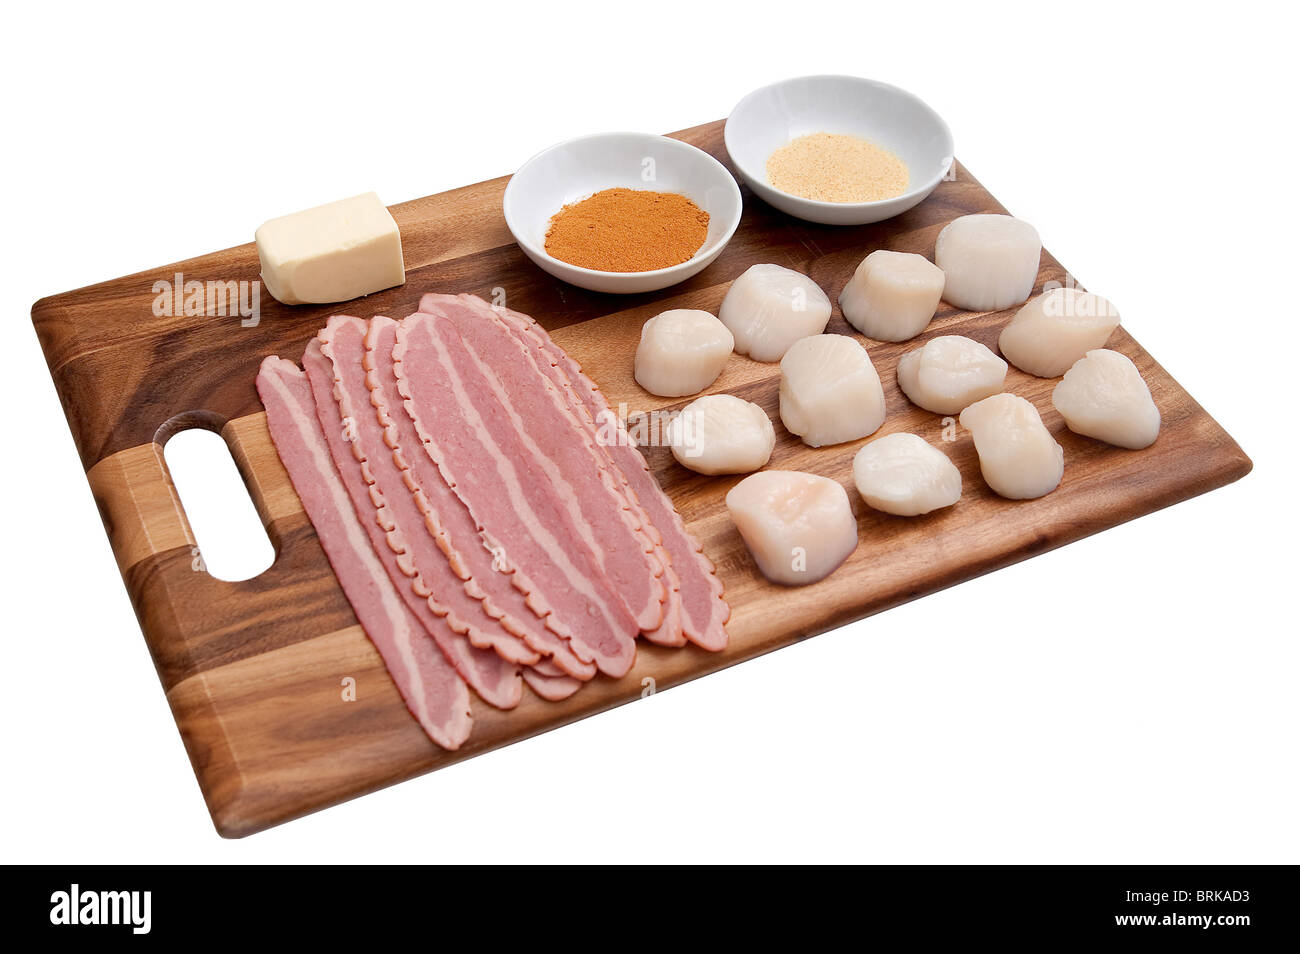 Mise en place ingredienti per rendere pancetta avvolto capesante stabiliti ordinatamente su un tagliere prima della cottura Foto Stock